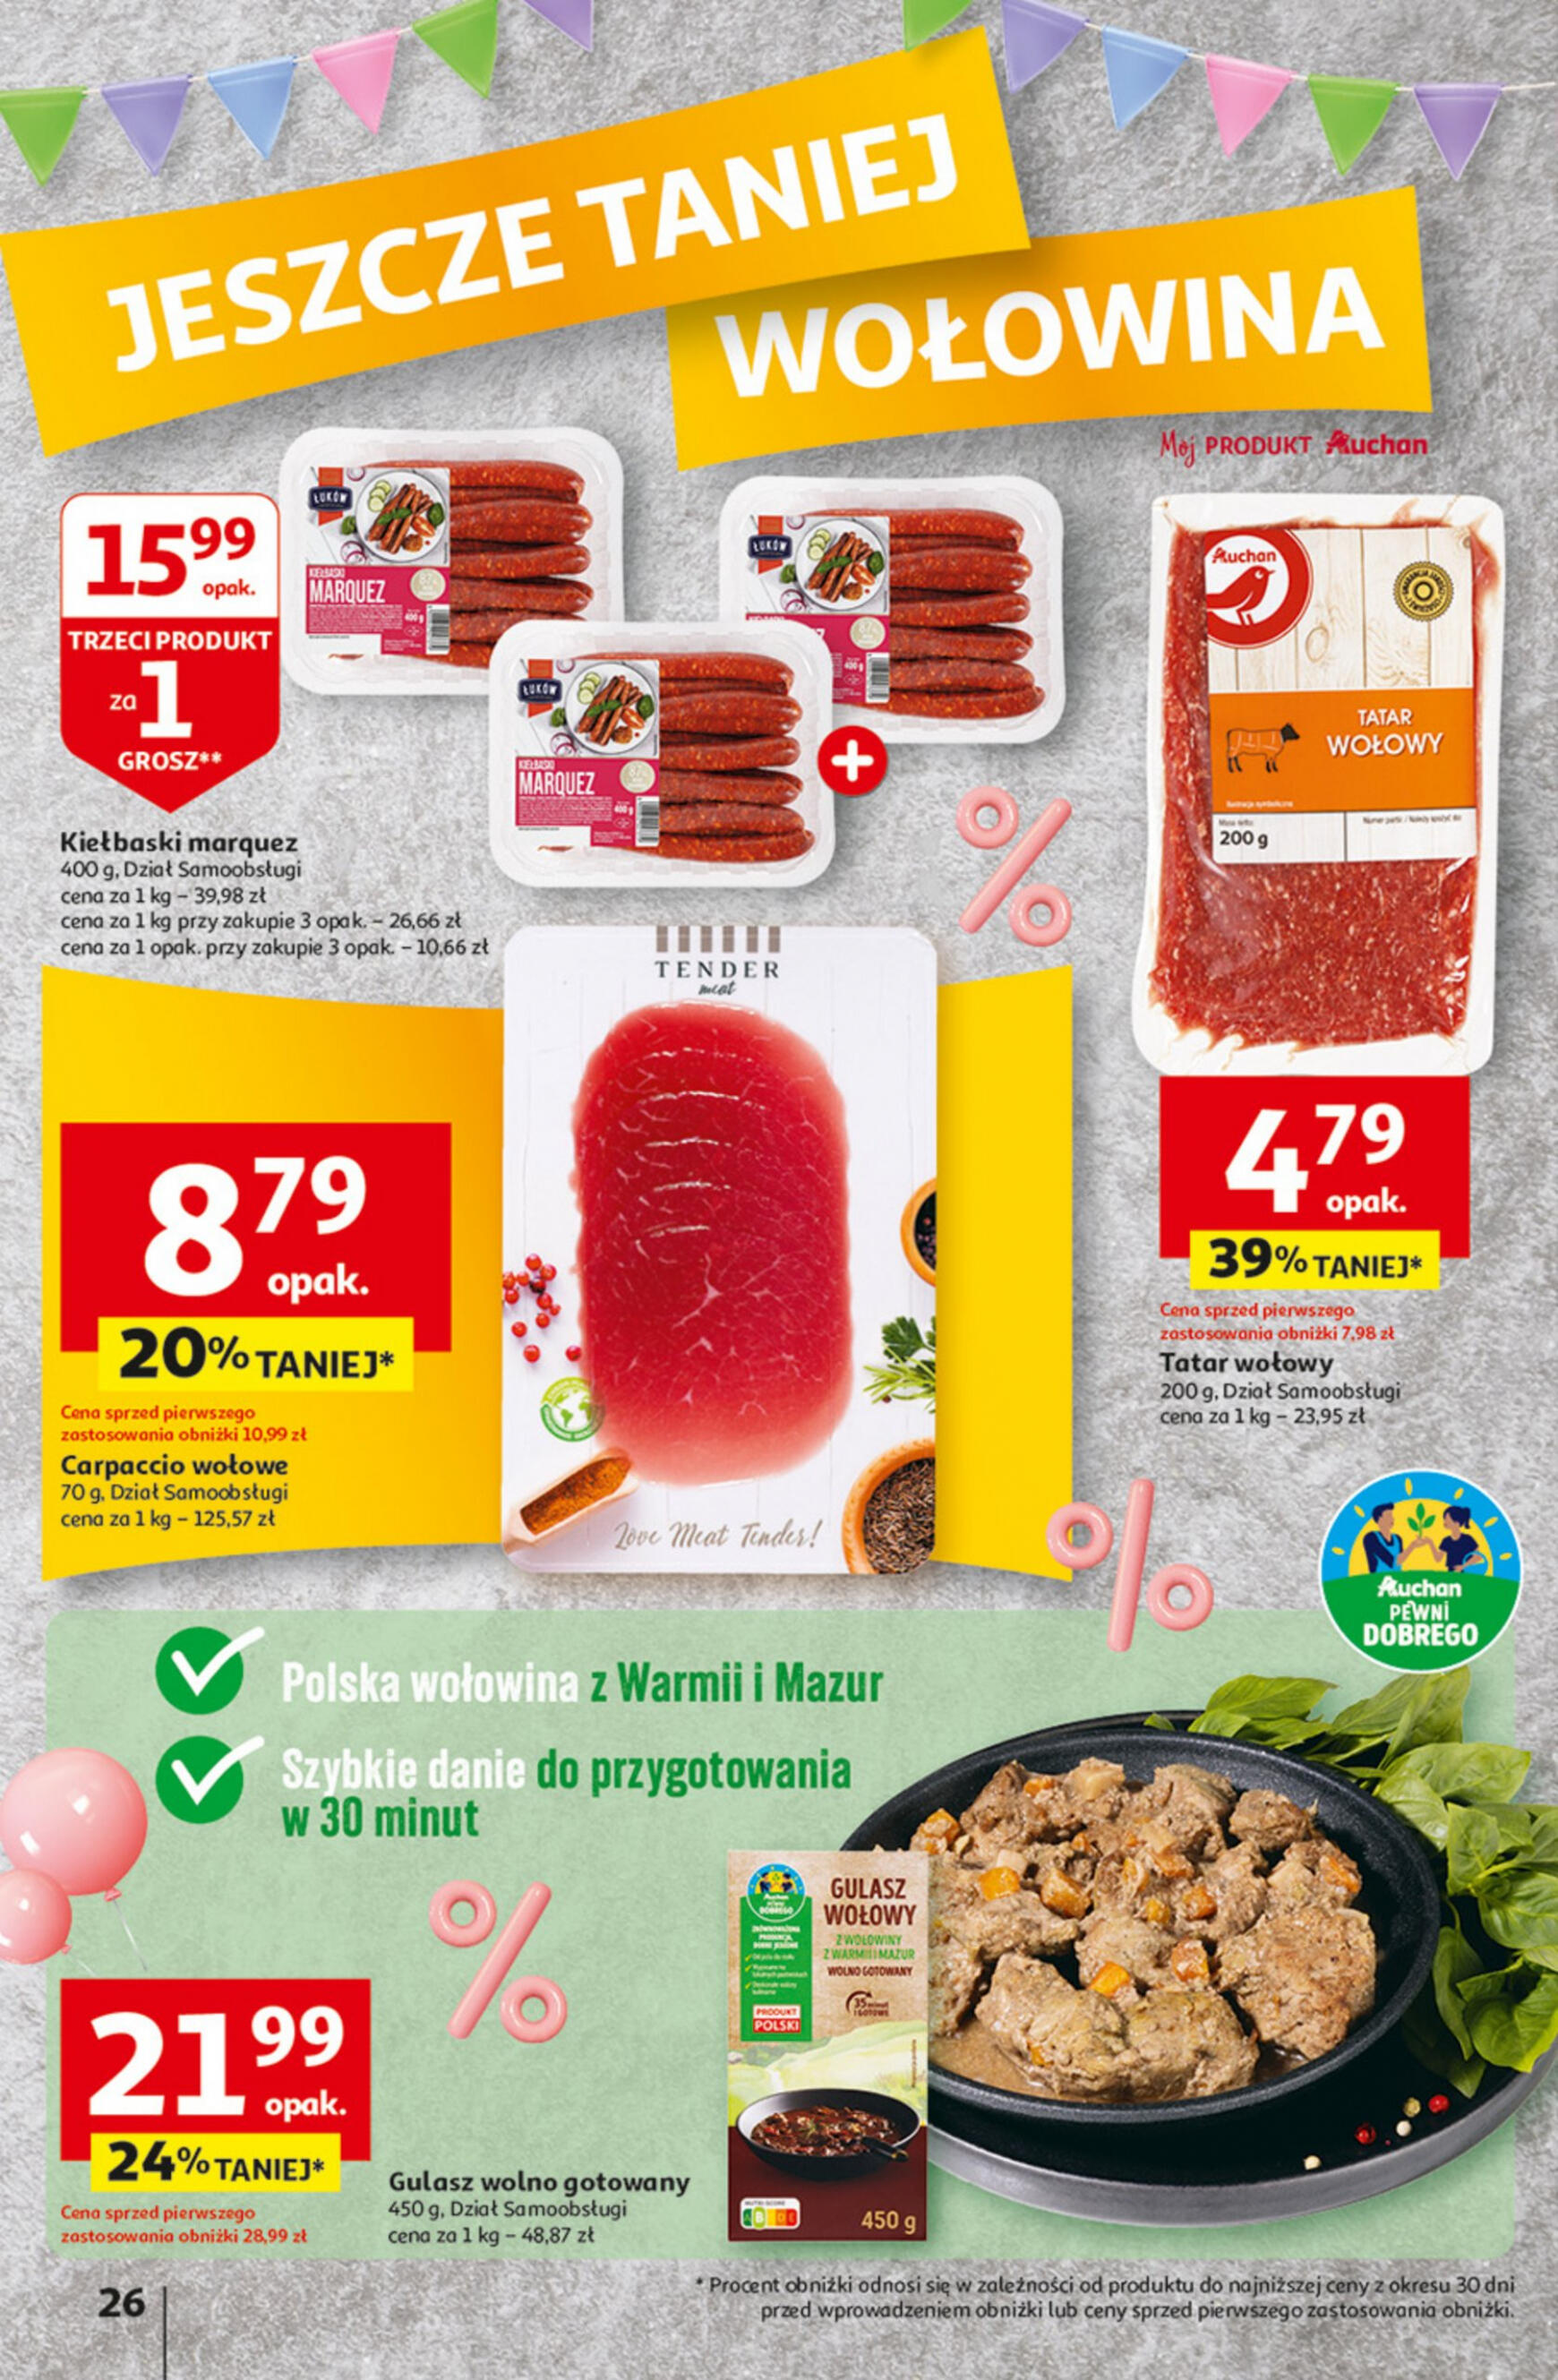 auchan - Hipermarket Auchan - Gazetka Jeszcze taniej na urodziny gazetka aktualna ważna od 09.05. - 15.05. - page: 26